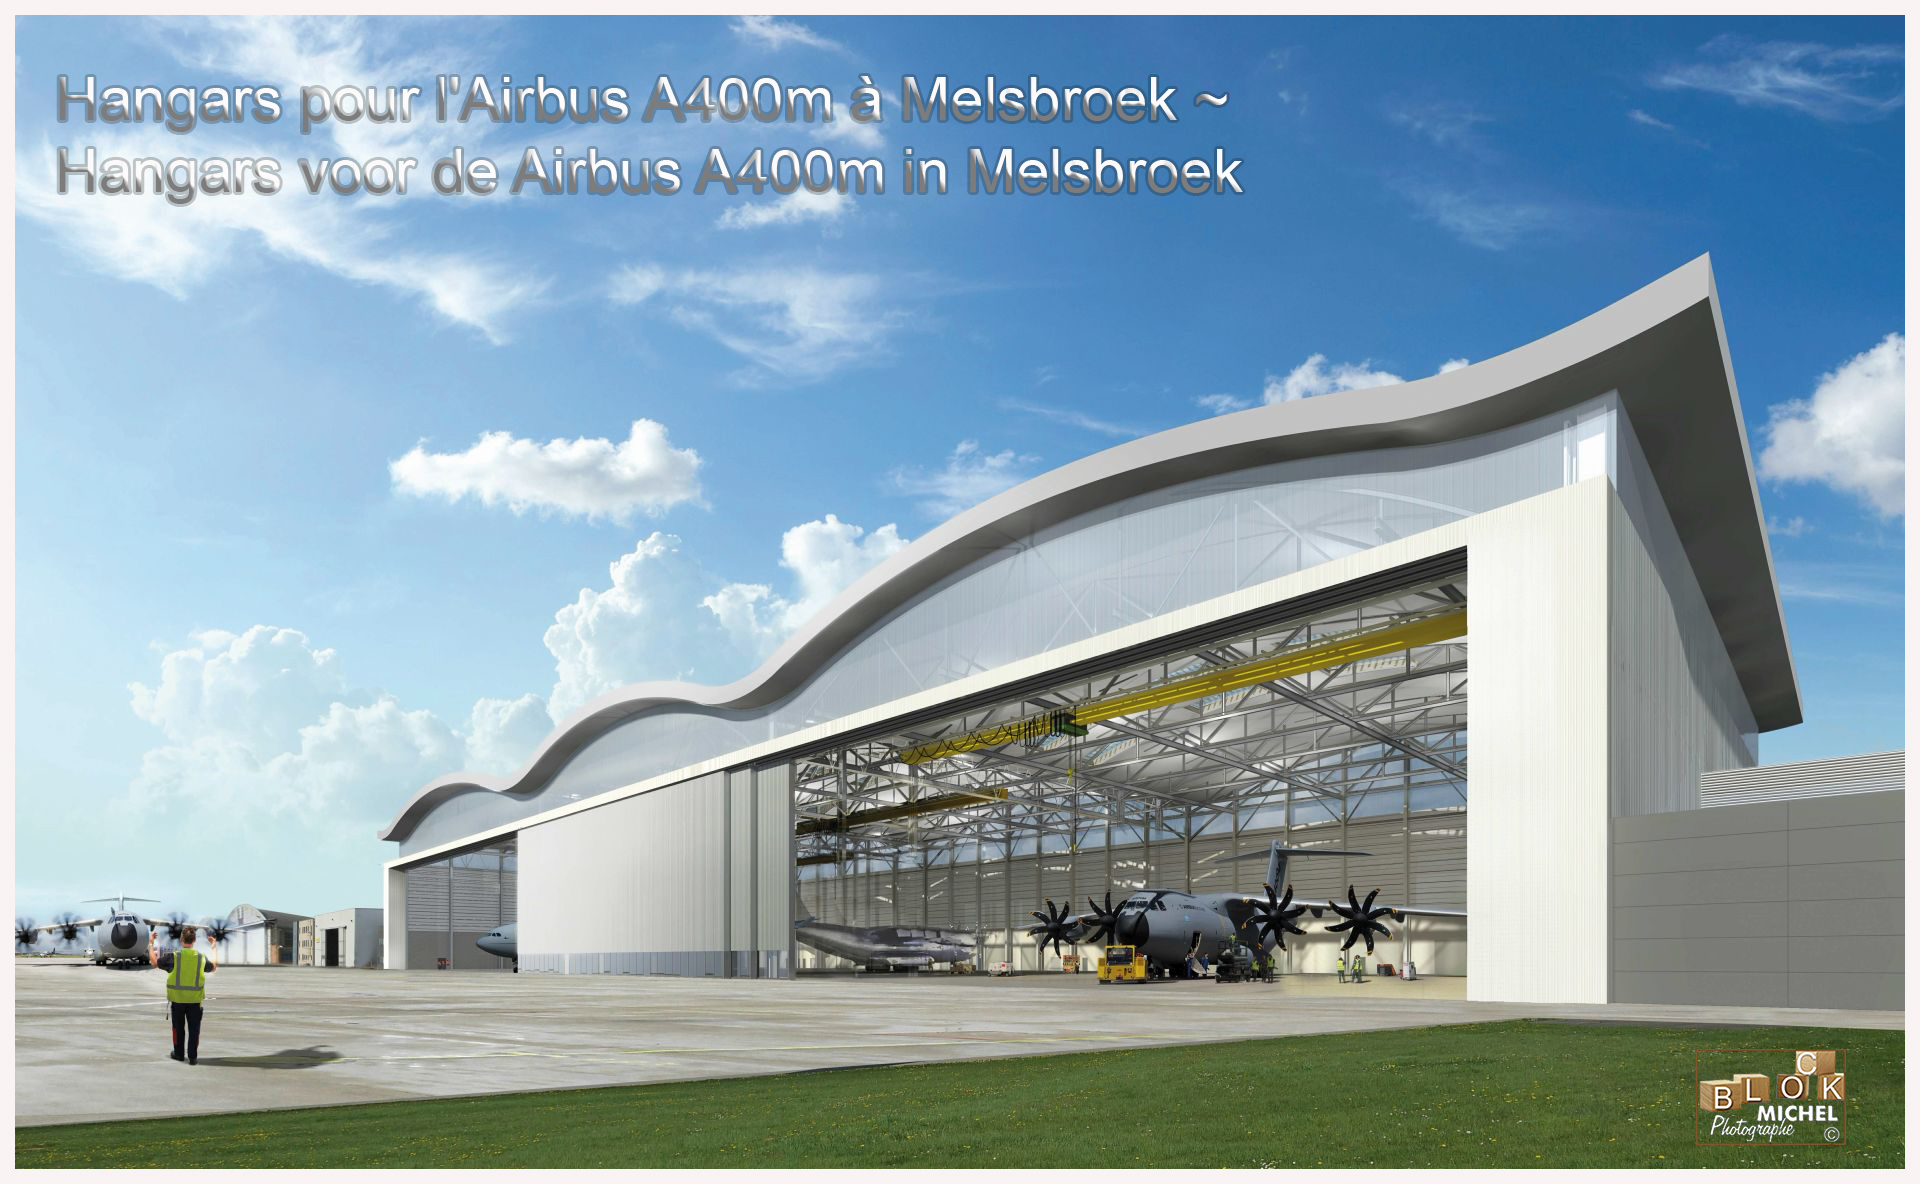 Hangars pour l’Airbus A400m à Melsbroek ~ Hangars voor de Airbus A400m in Melsbroek